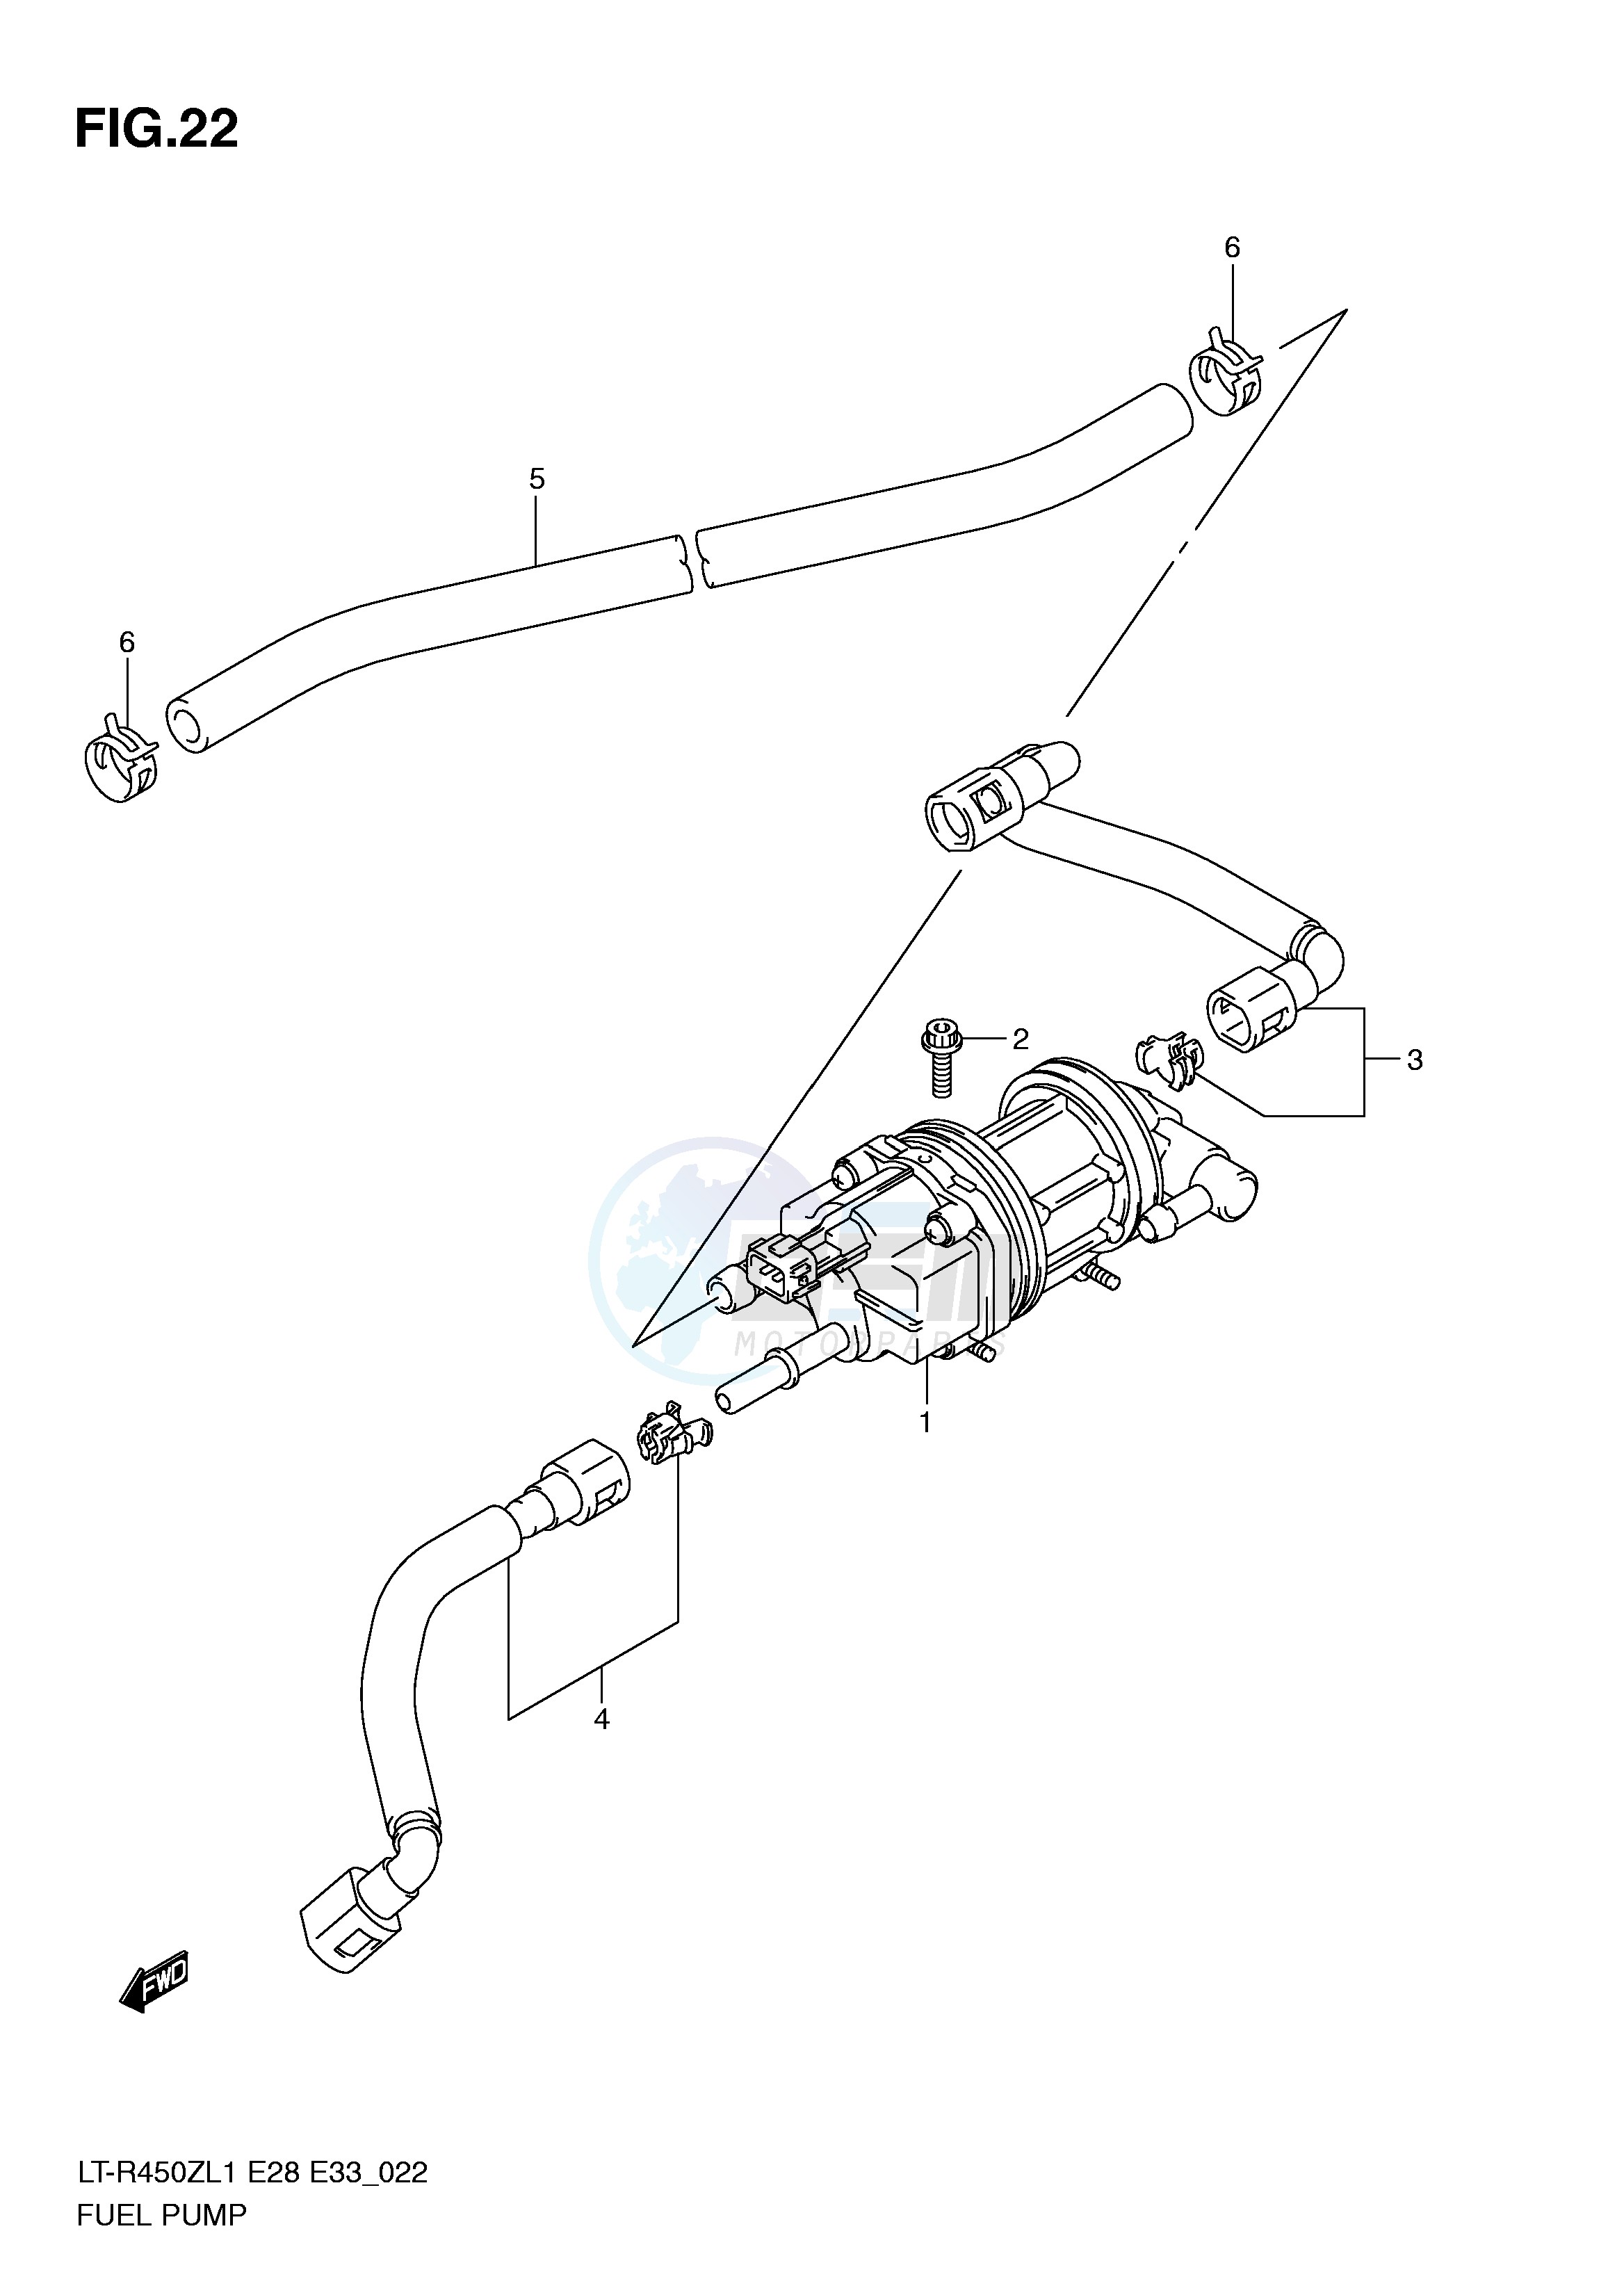 FUEL PUMP (LT-R450L1 E28) blueprint